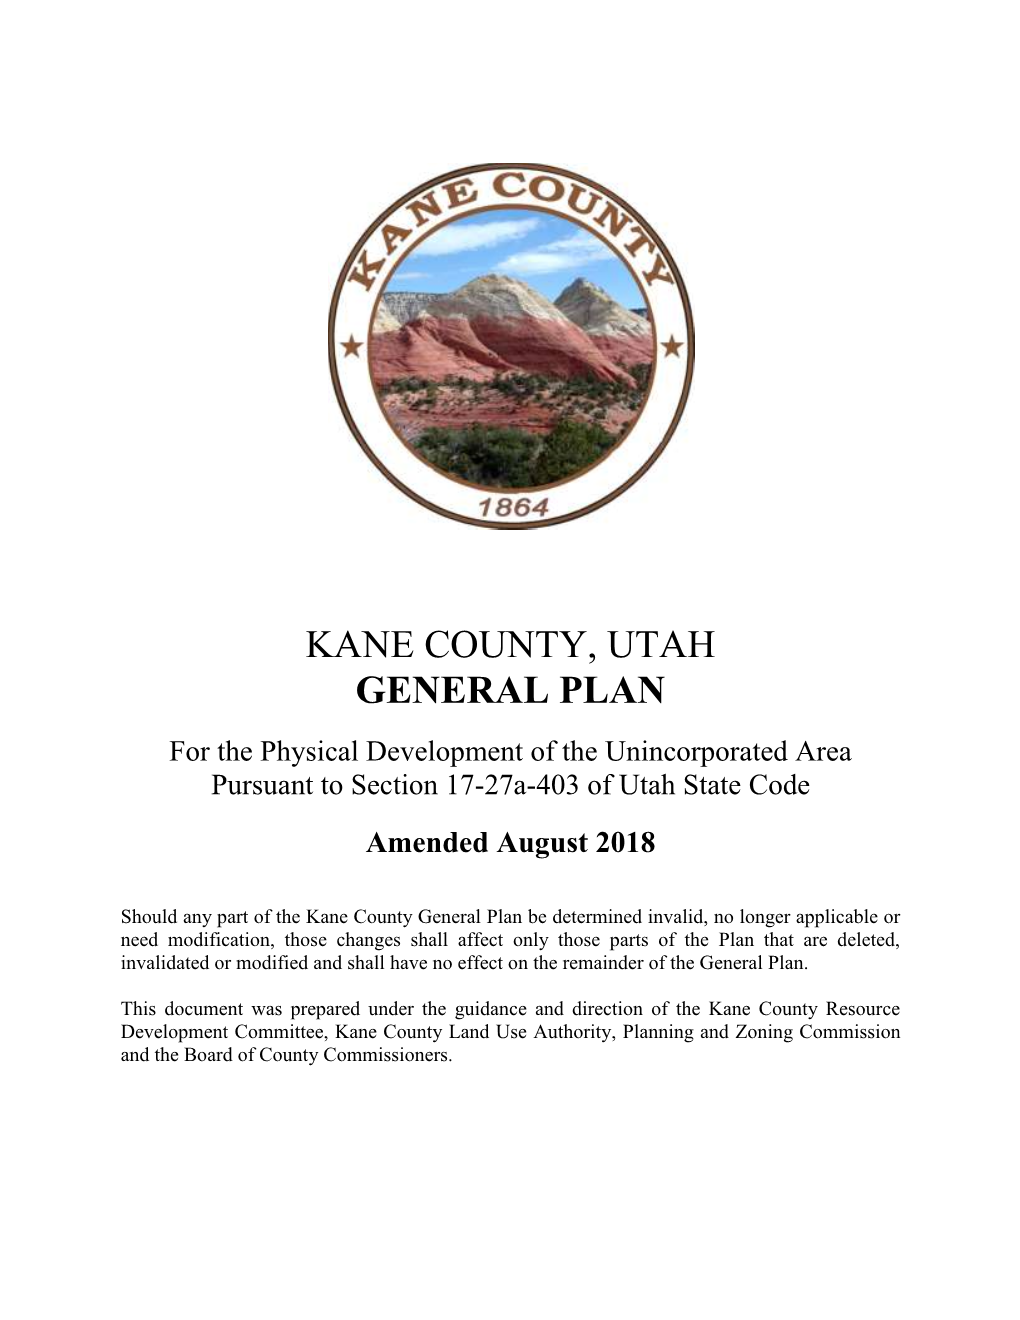 Kane County, Utah General Plan